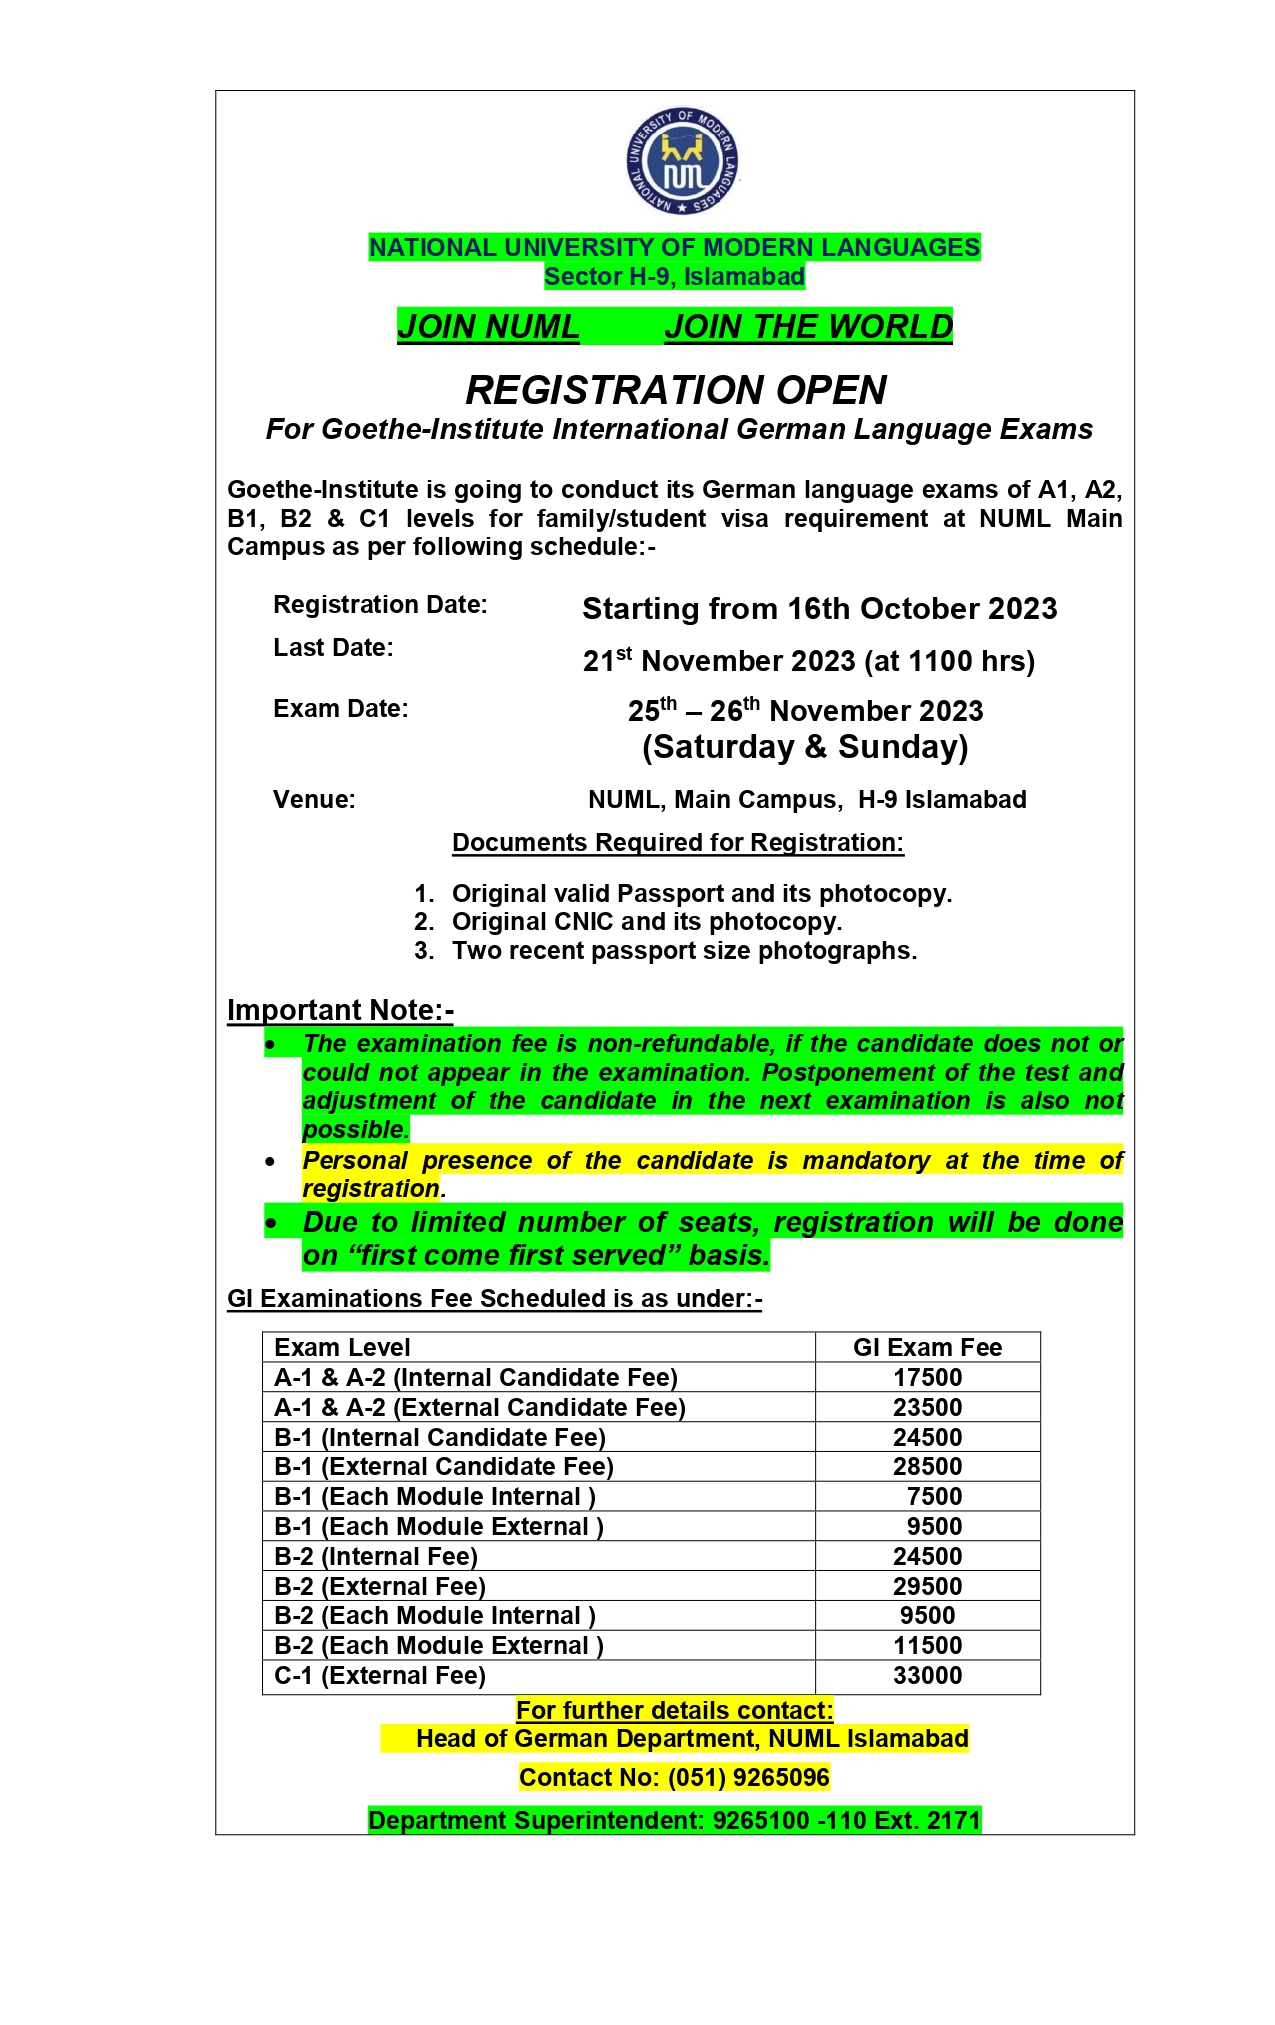 Registration open for Goethe Institute Exam